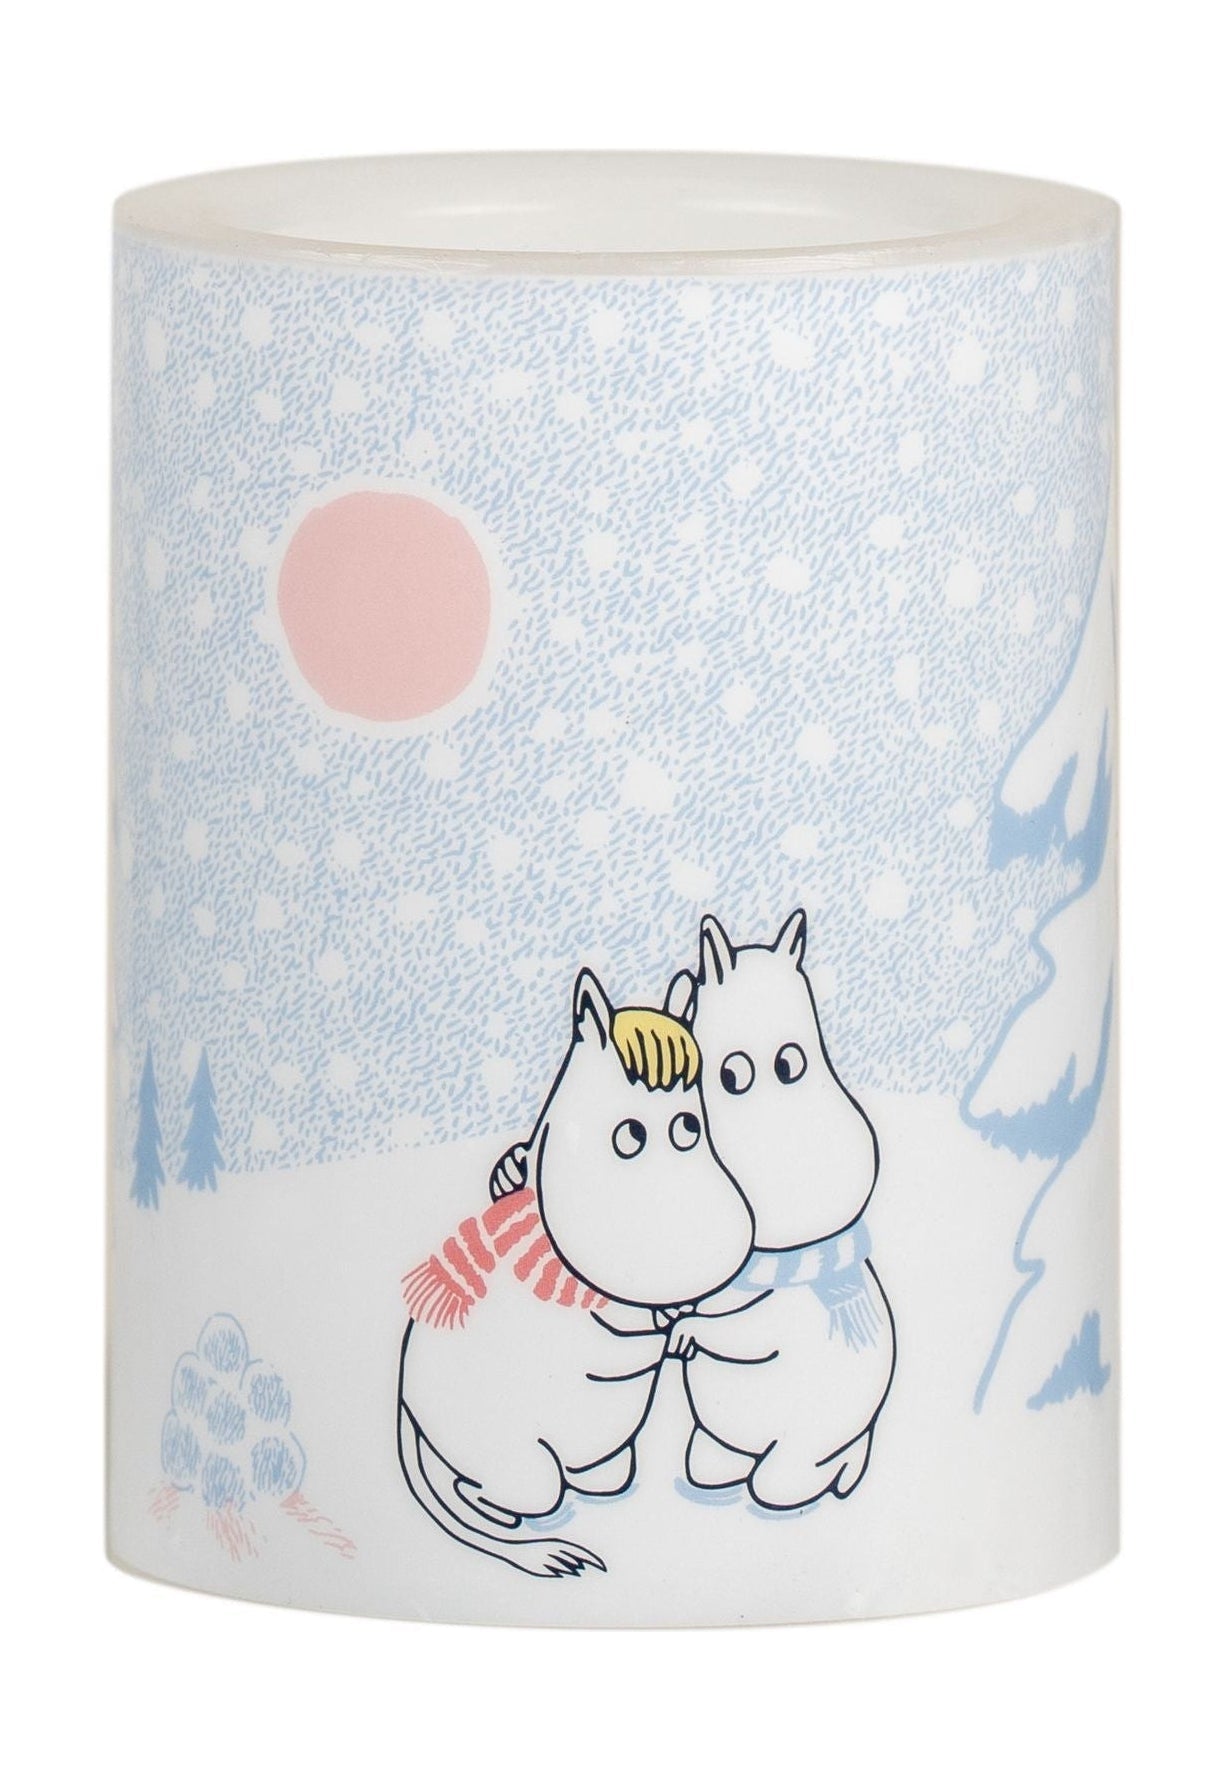 Muurla Moomin LED Bandle laisse la neige